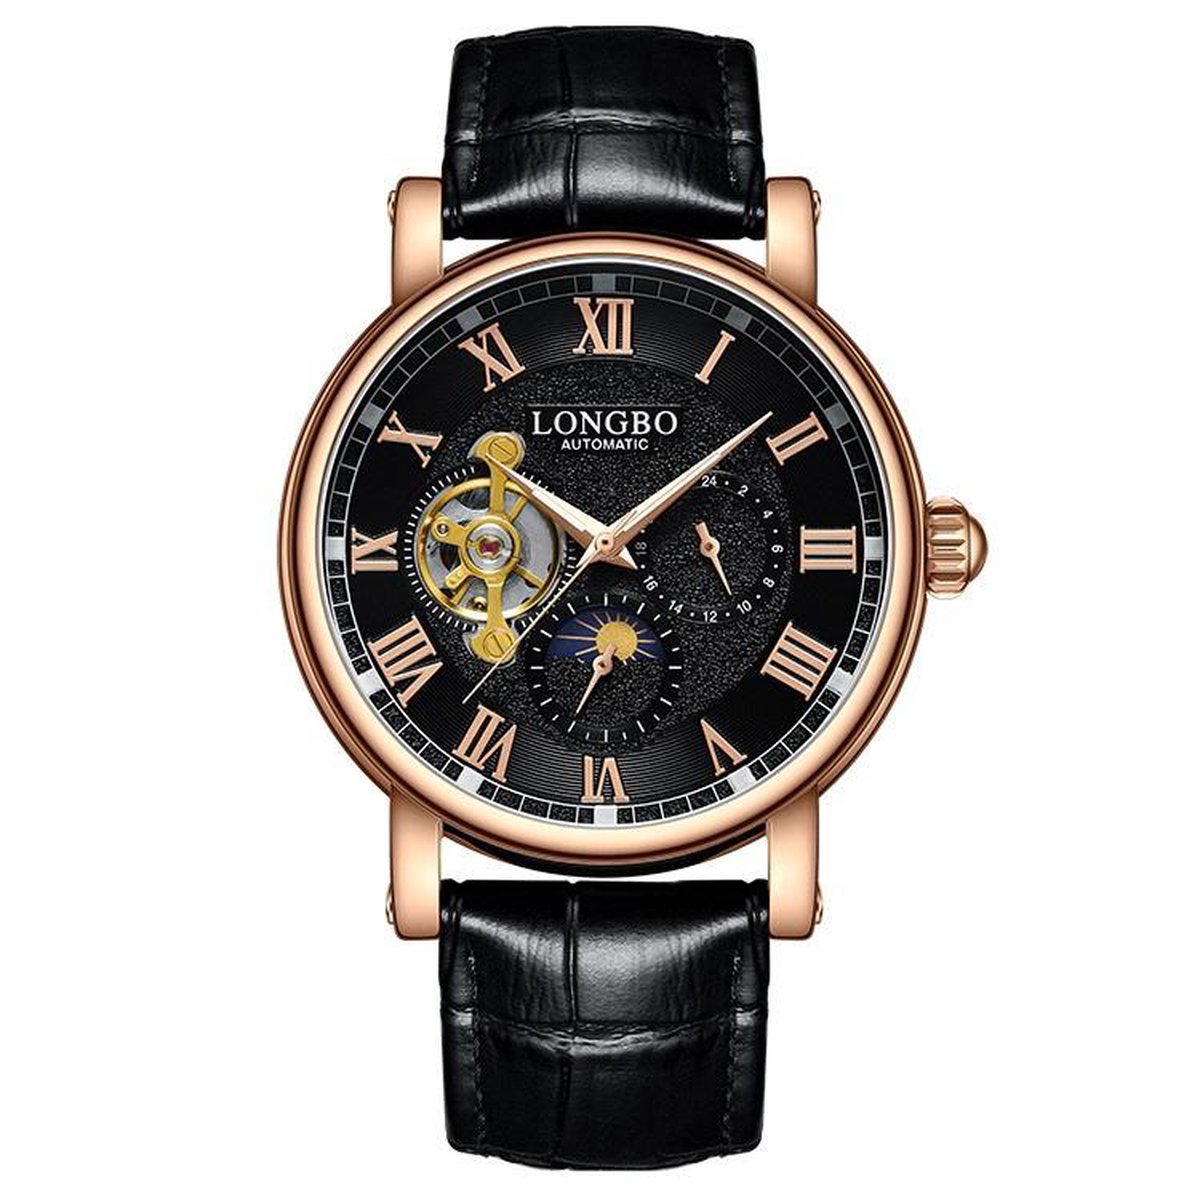 Longbo - Heren Horloge - Zwart/Rosé/Zwart - 44mm - Automatic